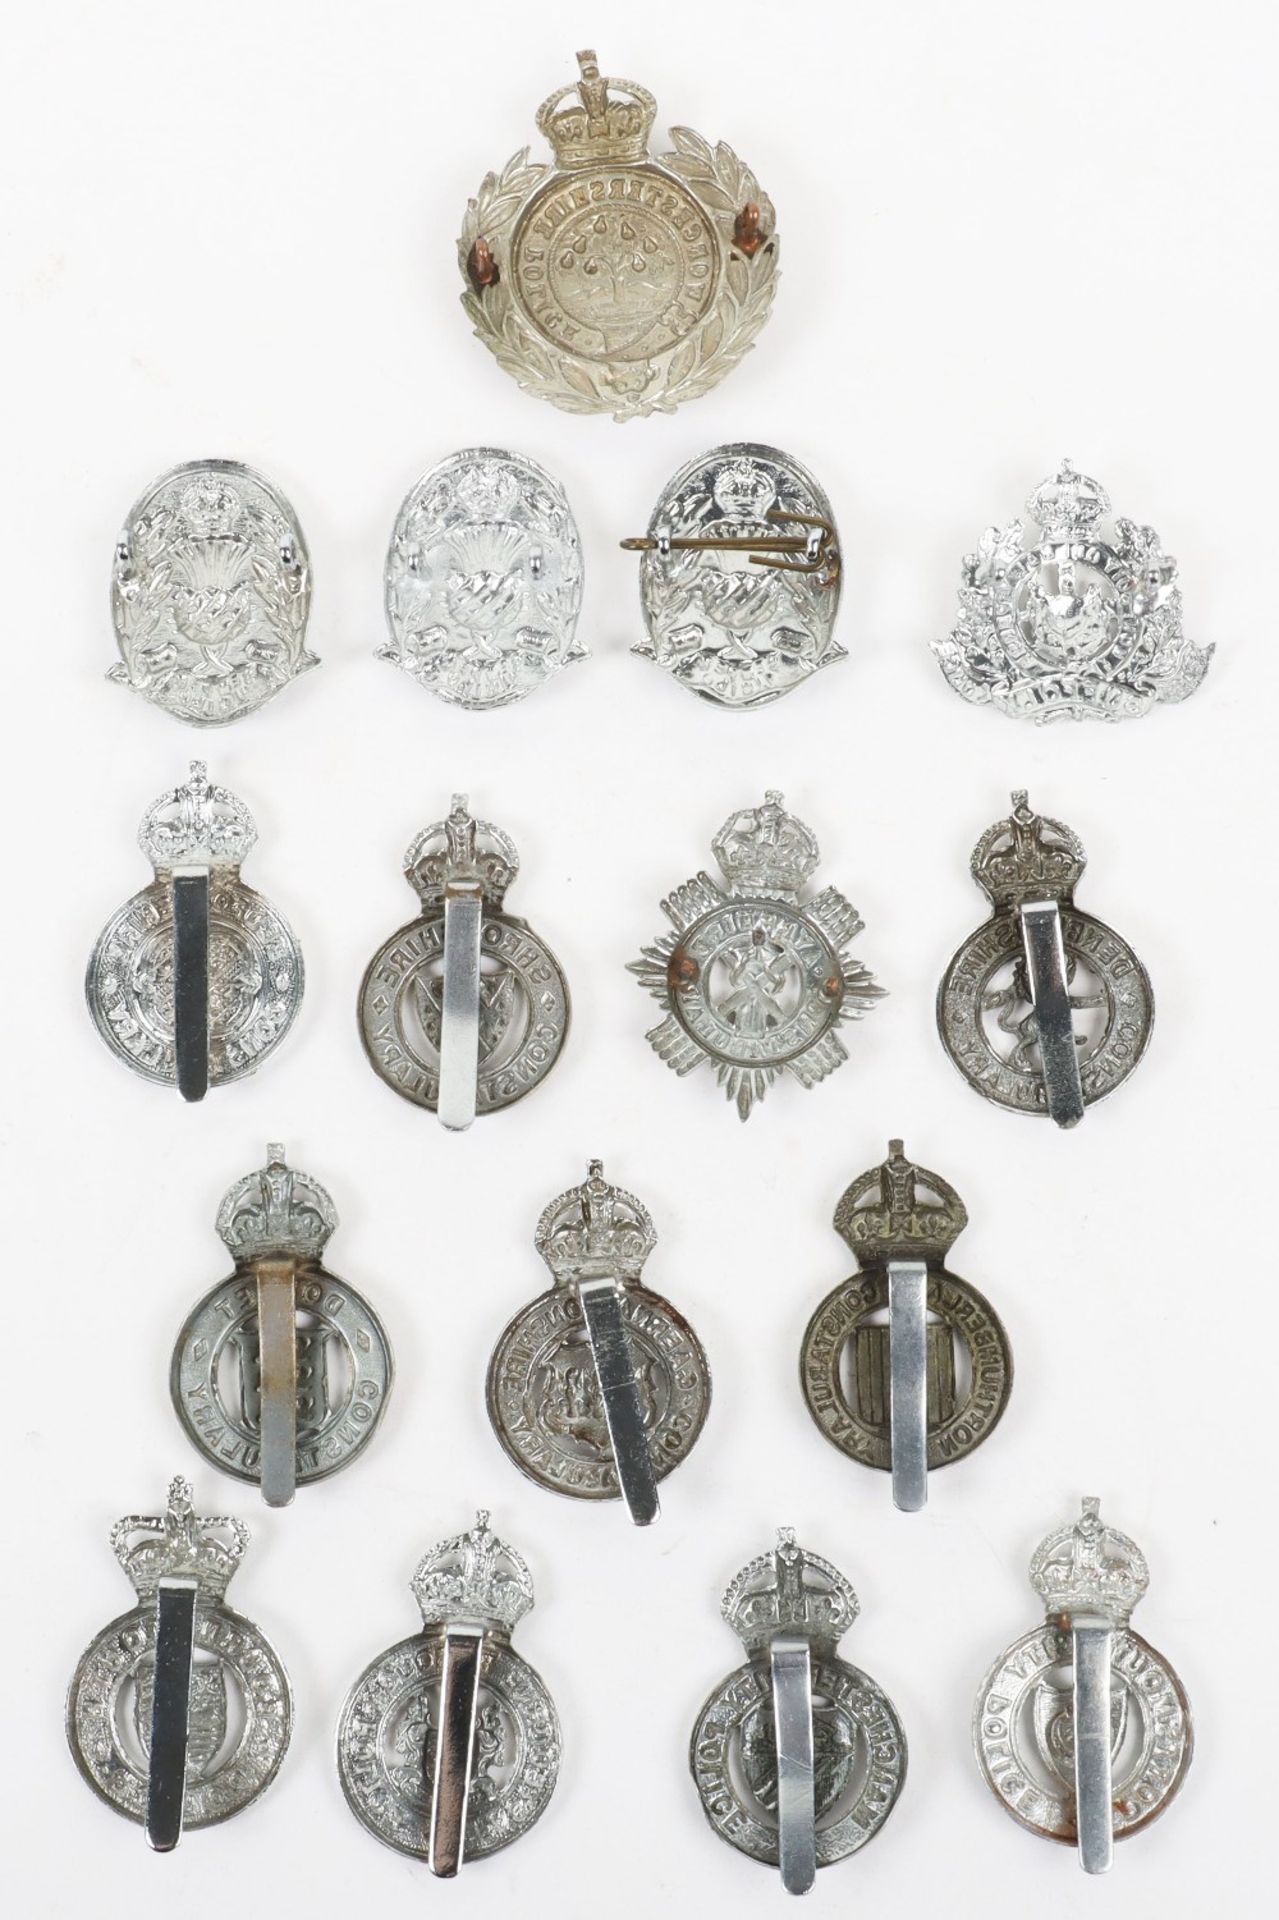 Fifteen Kings Crown Police Cap Badges - Image 4 of 4